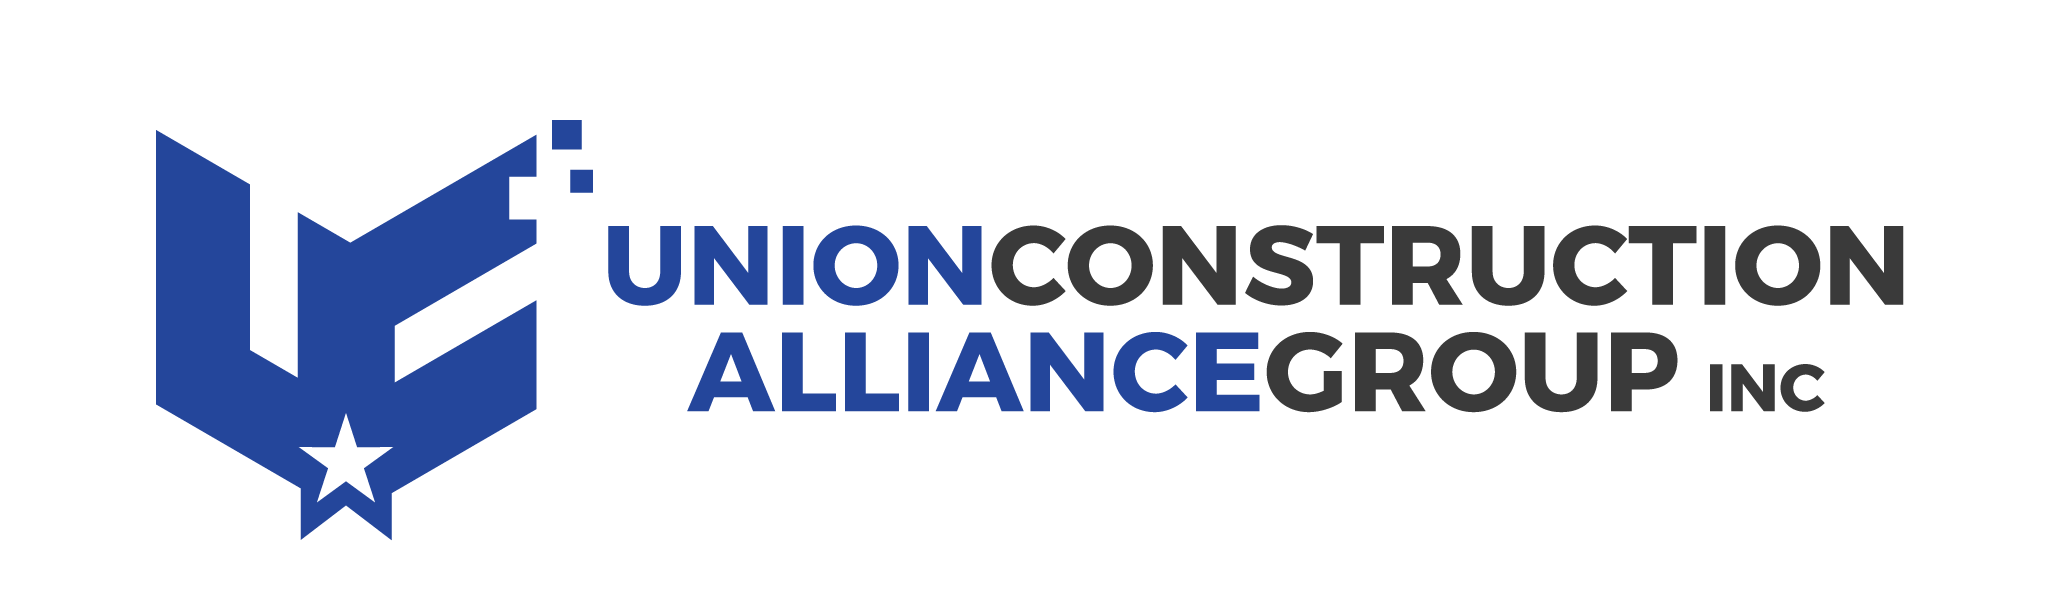 Union Construction Alliance Group